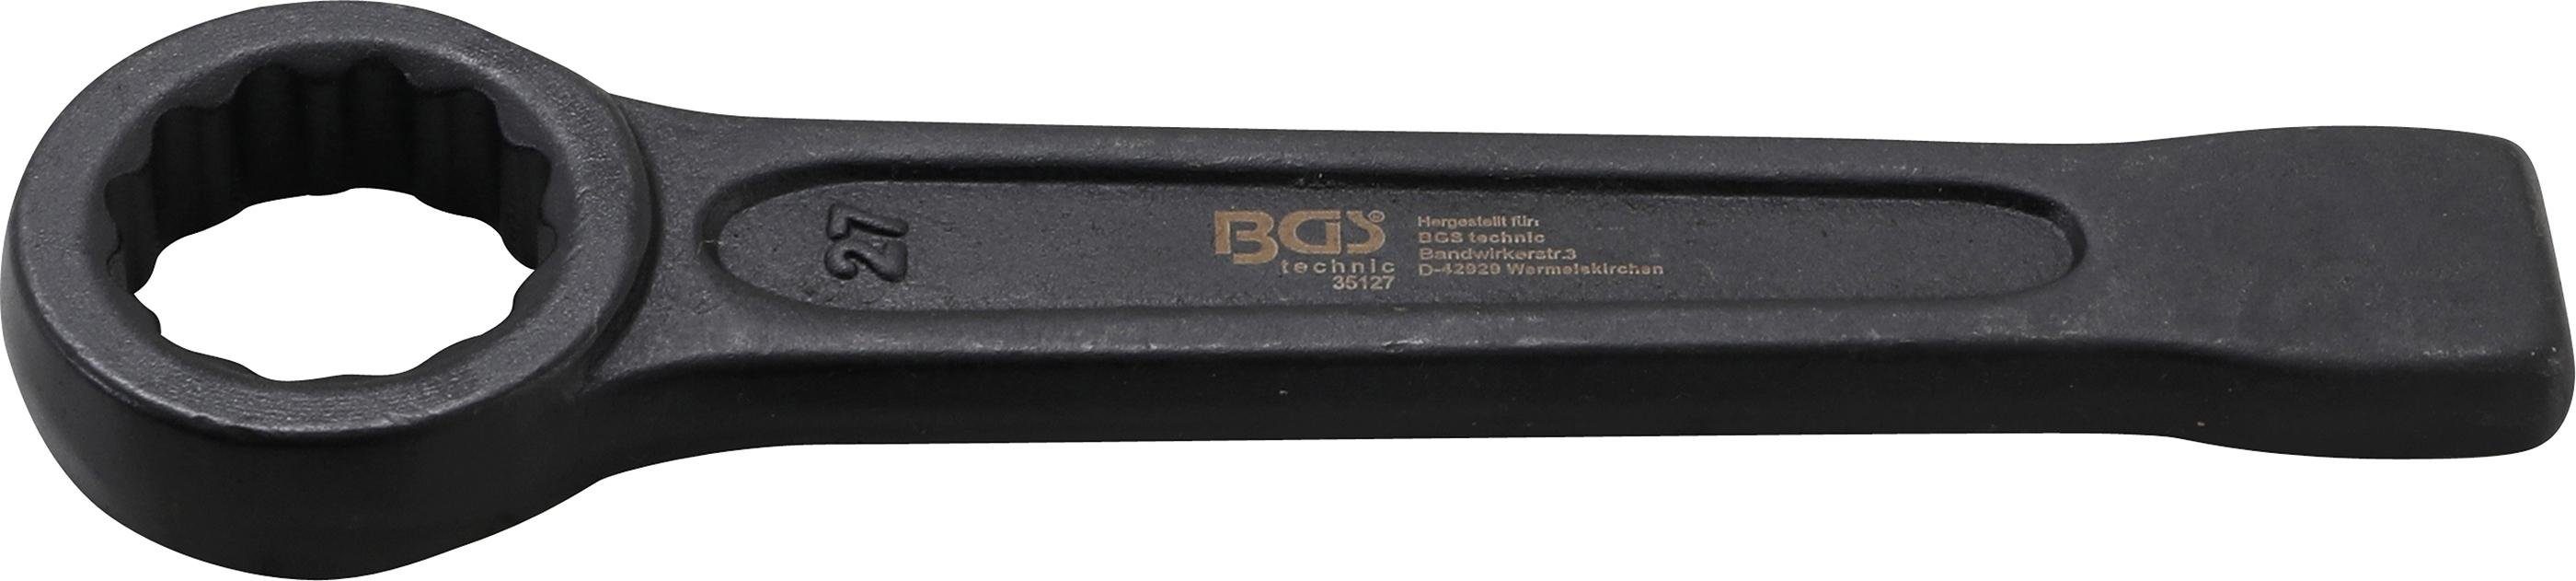 BGS technic Ringschlüssel Schlag-Ringschlüssel, SW 27 mm | Ringschlüssel